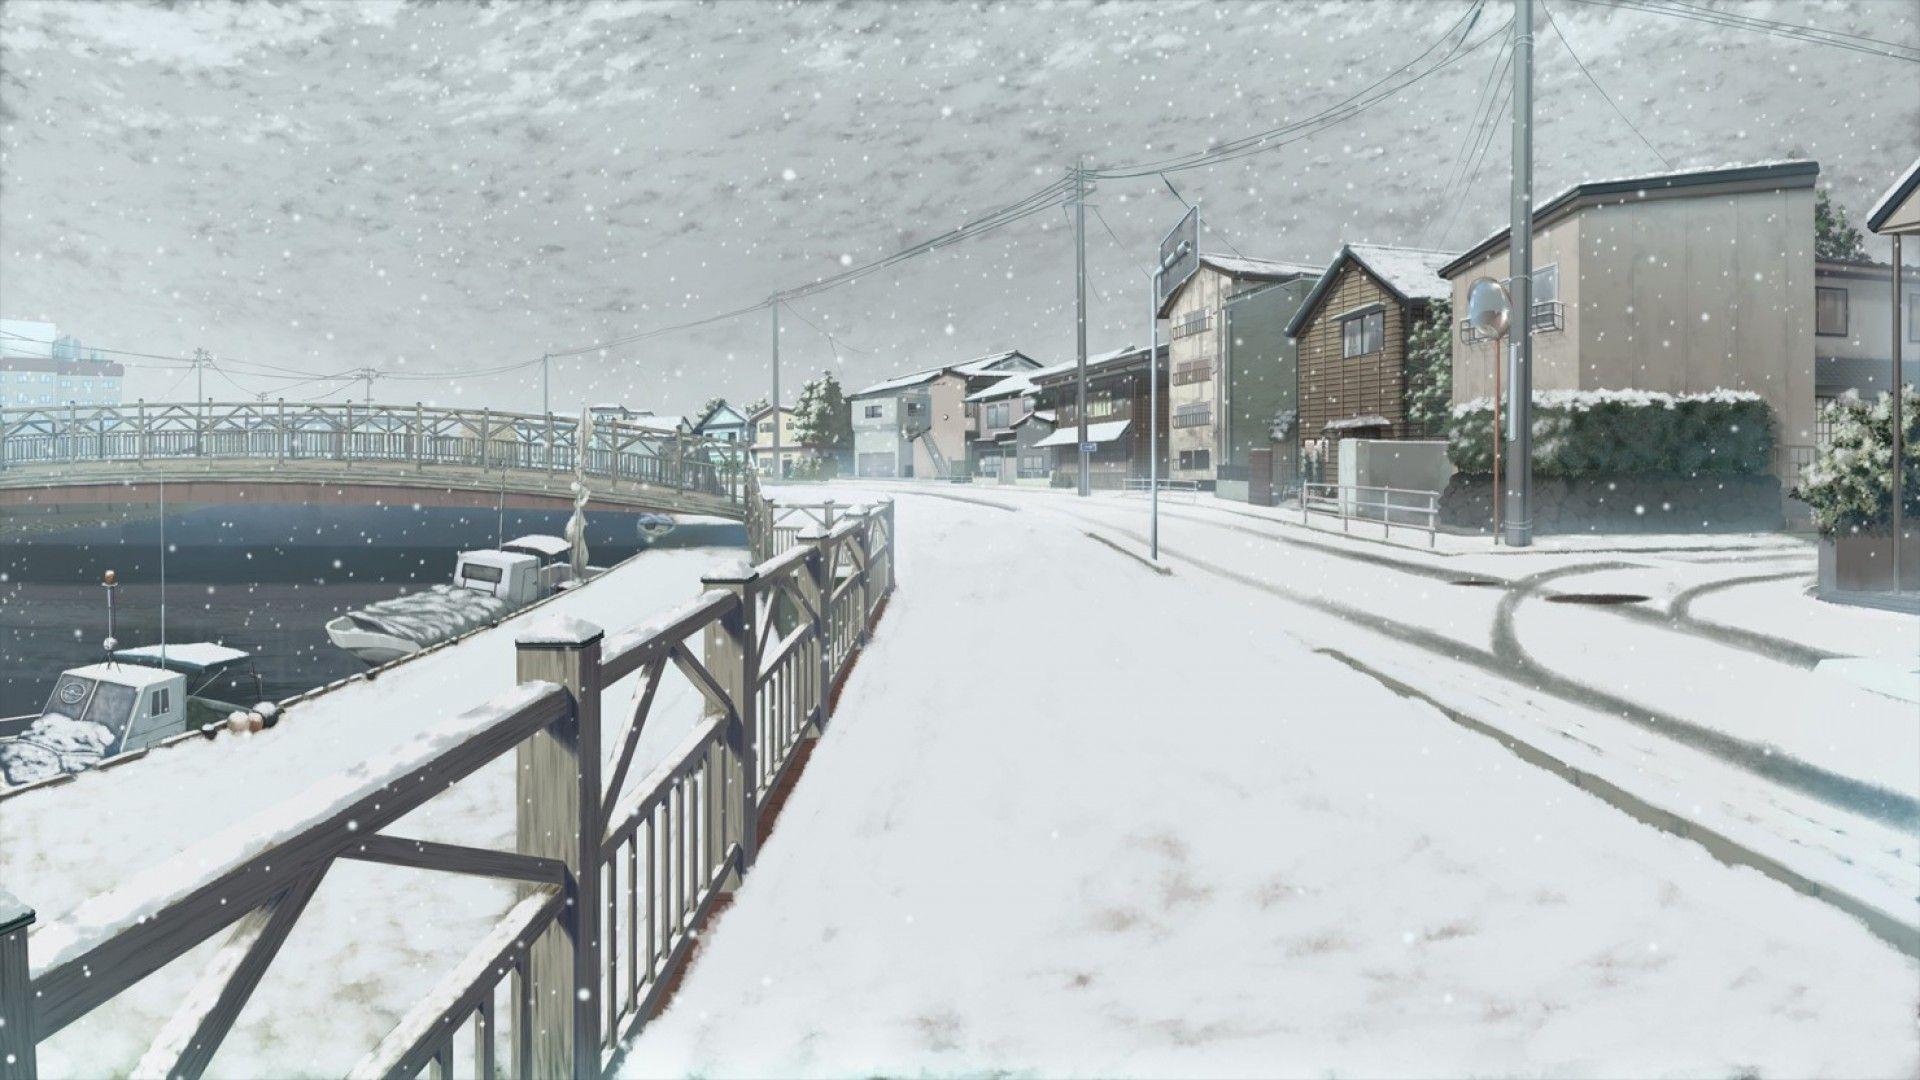 Anime Winter Scenery wallpaper. Winter scenery, Scenery wallpaper